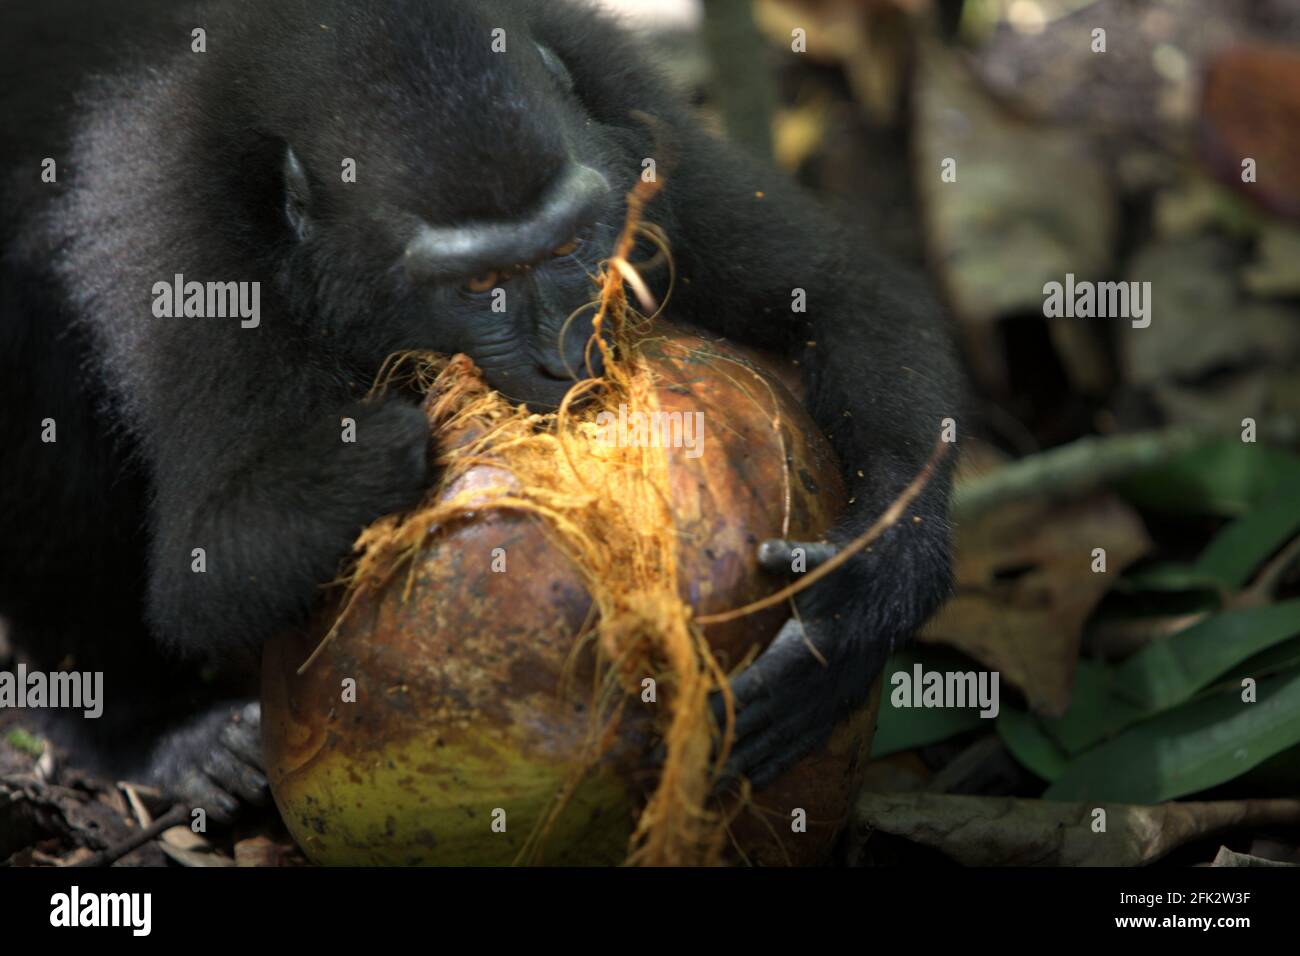 Un macaco crestato--ha perso la sua mano destra ad una trappola di un poacher--sta provando ad aprire una frutta di cocco mordendo. Piantare alberi da frutto nella zona tra foresta e paesaggio agricolo contribuirebbe a ridurre i conflitti uomo-scimmia, secondo Reyni Palohoen, coordinatore di progetto di Selamatkan Yaki (Save Yaki) all'inizio di questo mese, rispondendo all'invasione di scimmie di terreni agricoli nella reggenza del Minahasa meridionale, Sulawesi settentrionale, Indonesia. Foto Stock